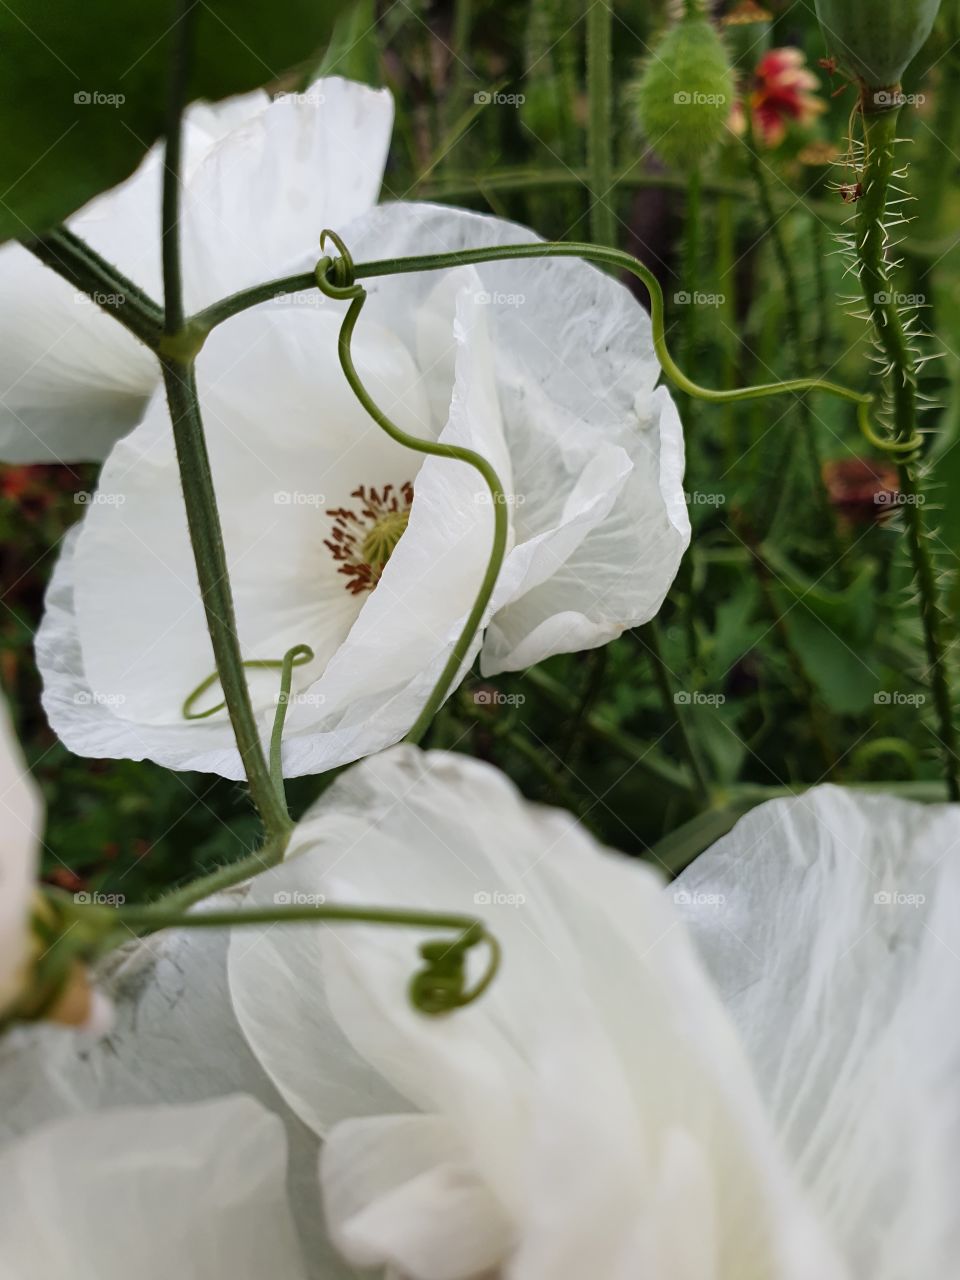 White poppies in the garden.